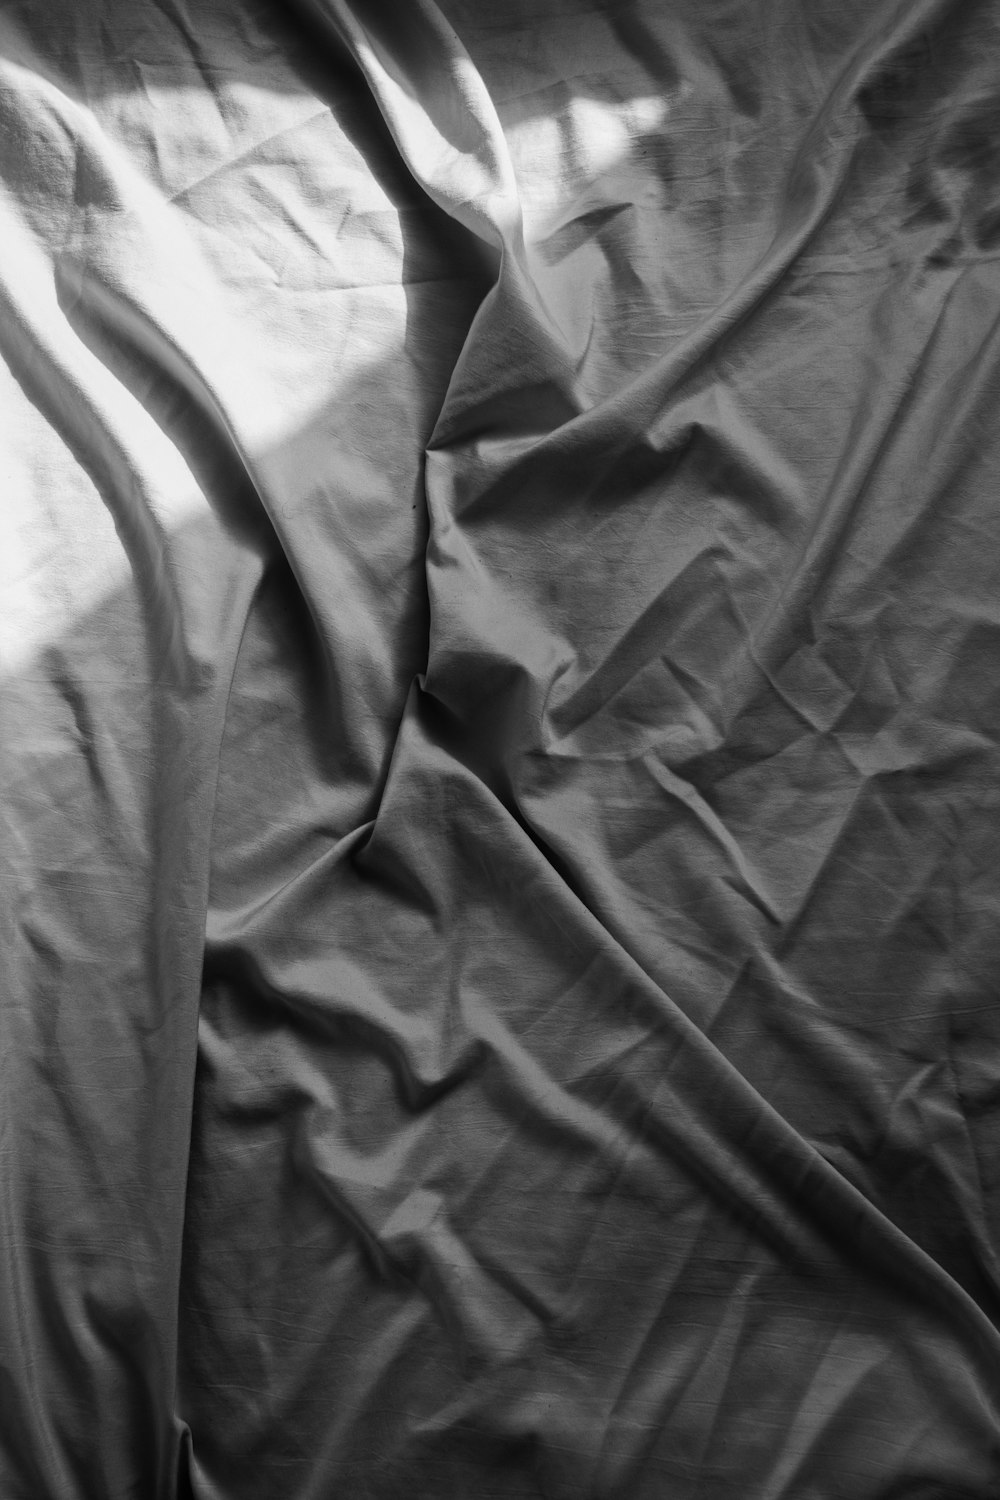 gray textile on white textile